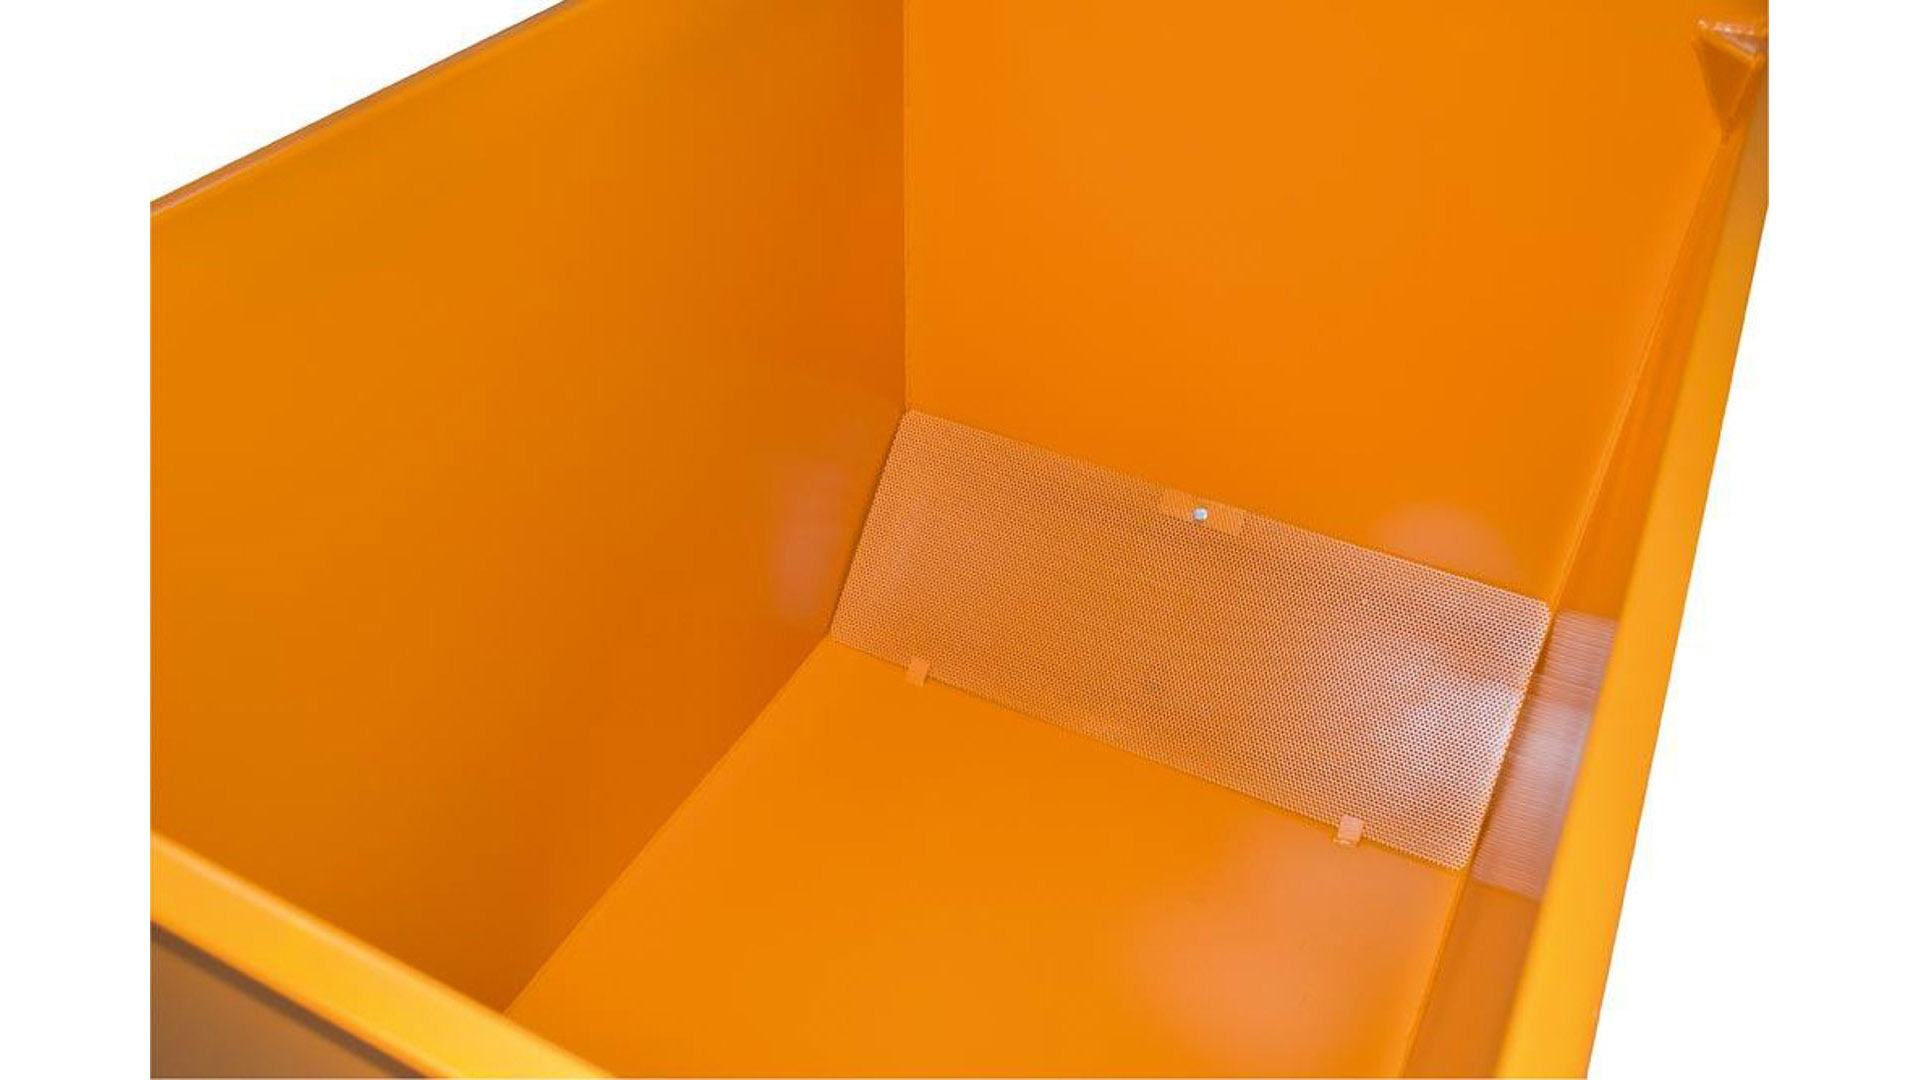 Spänebehälter, Spänebox, Spänekasten - 3-fach stapelbar - Volumen 300 l - Traglast 500 kg - 795 x 840 x 620 mm (HxBxT) - resedagrün